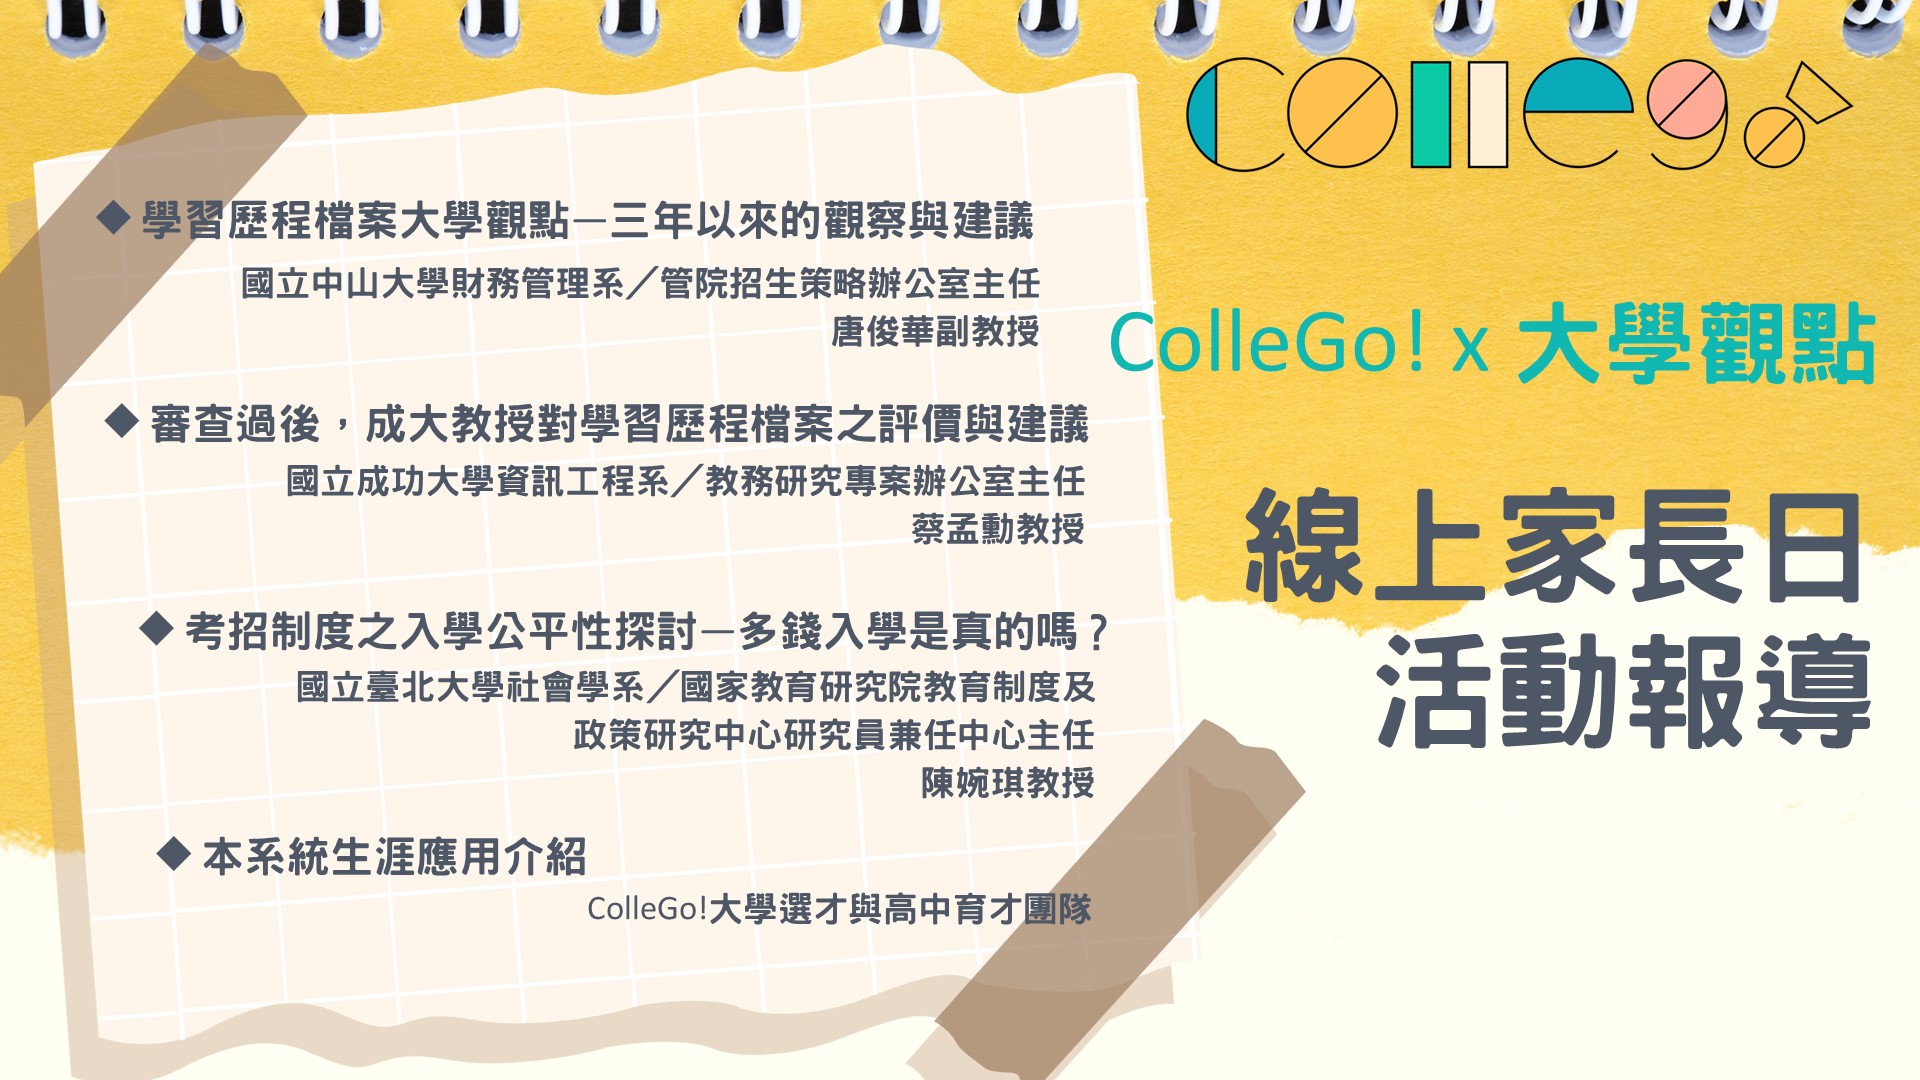 【ColleGo!大學觀點—線上家長日】大學教授怎麼看學習歷程檔案與考招新制？